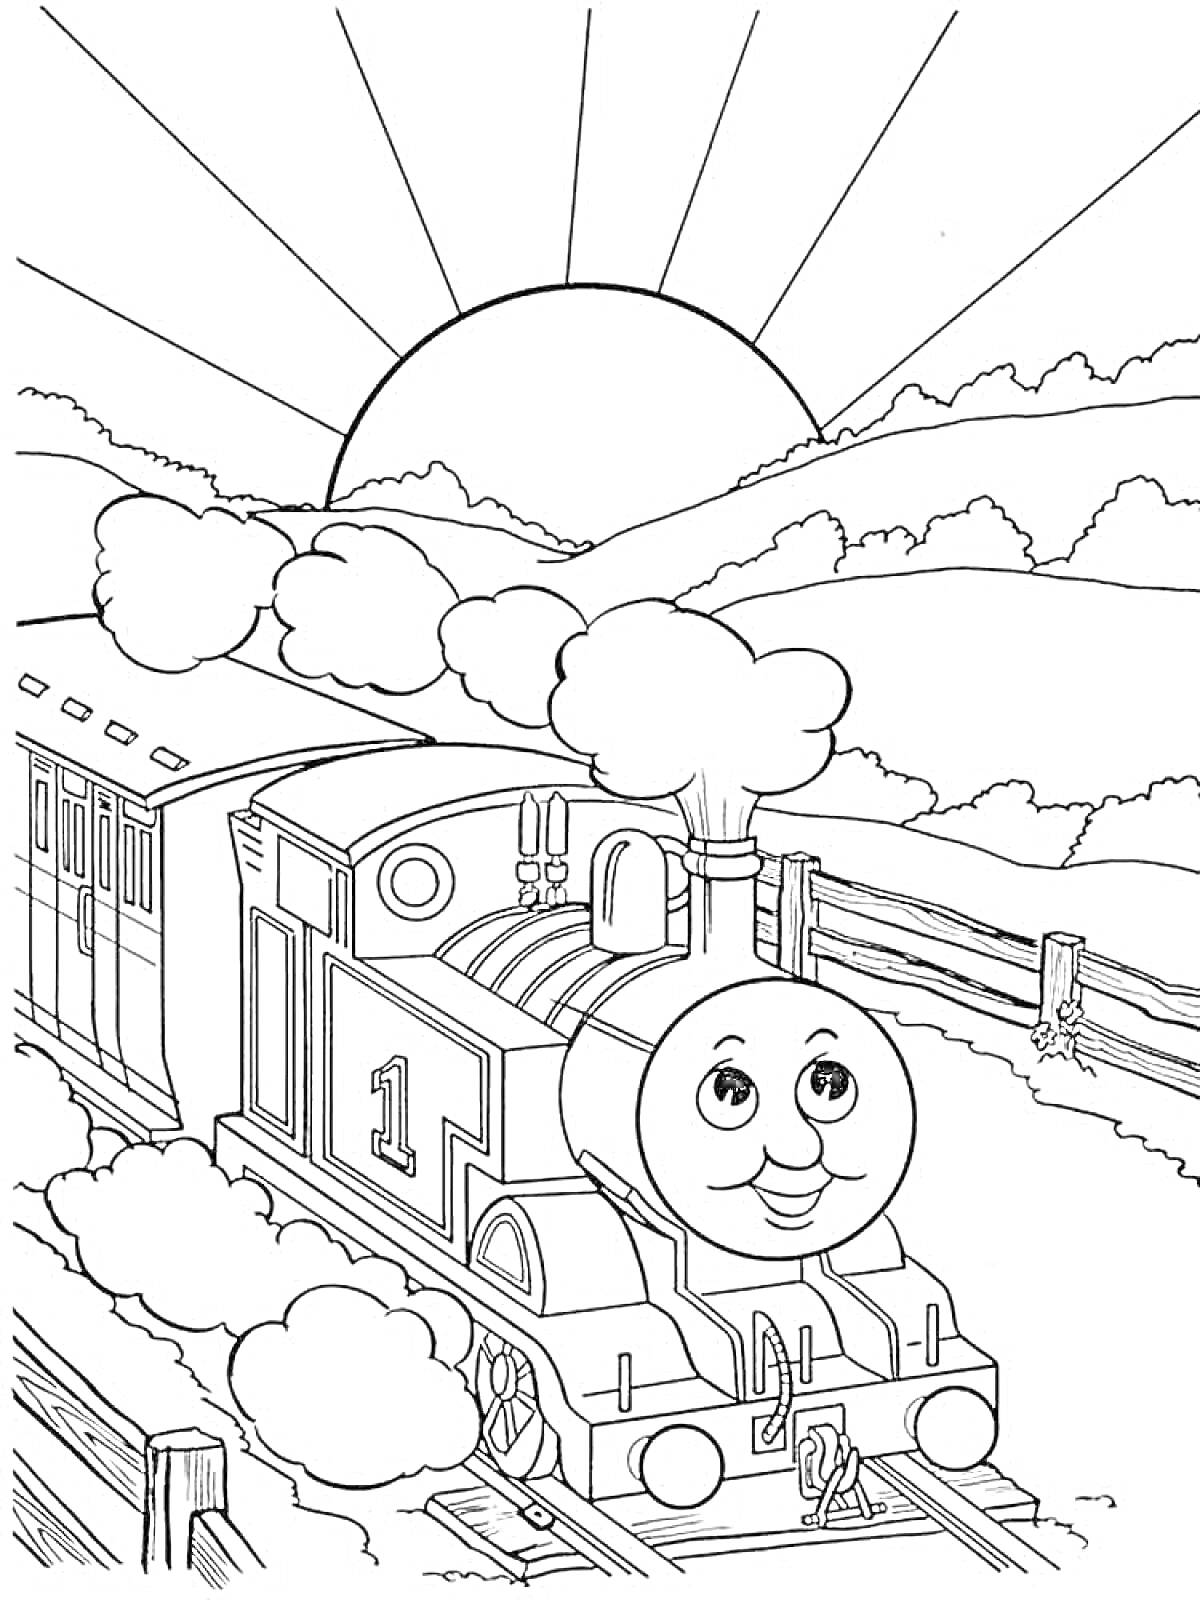 Раскраска Паровозик Томас с улыбкой, закат солнца, облака, холмы, железнодорожные пути, забор